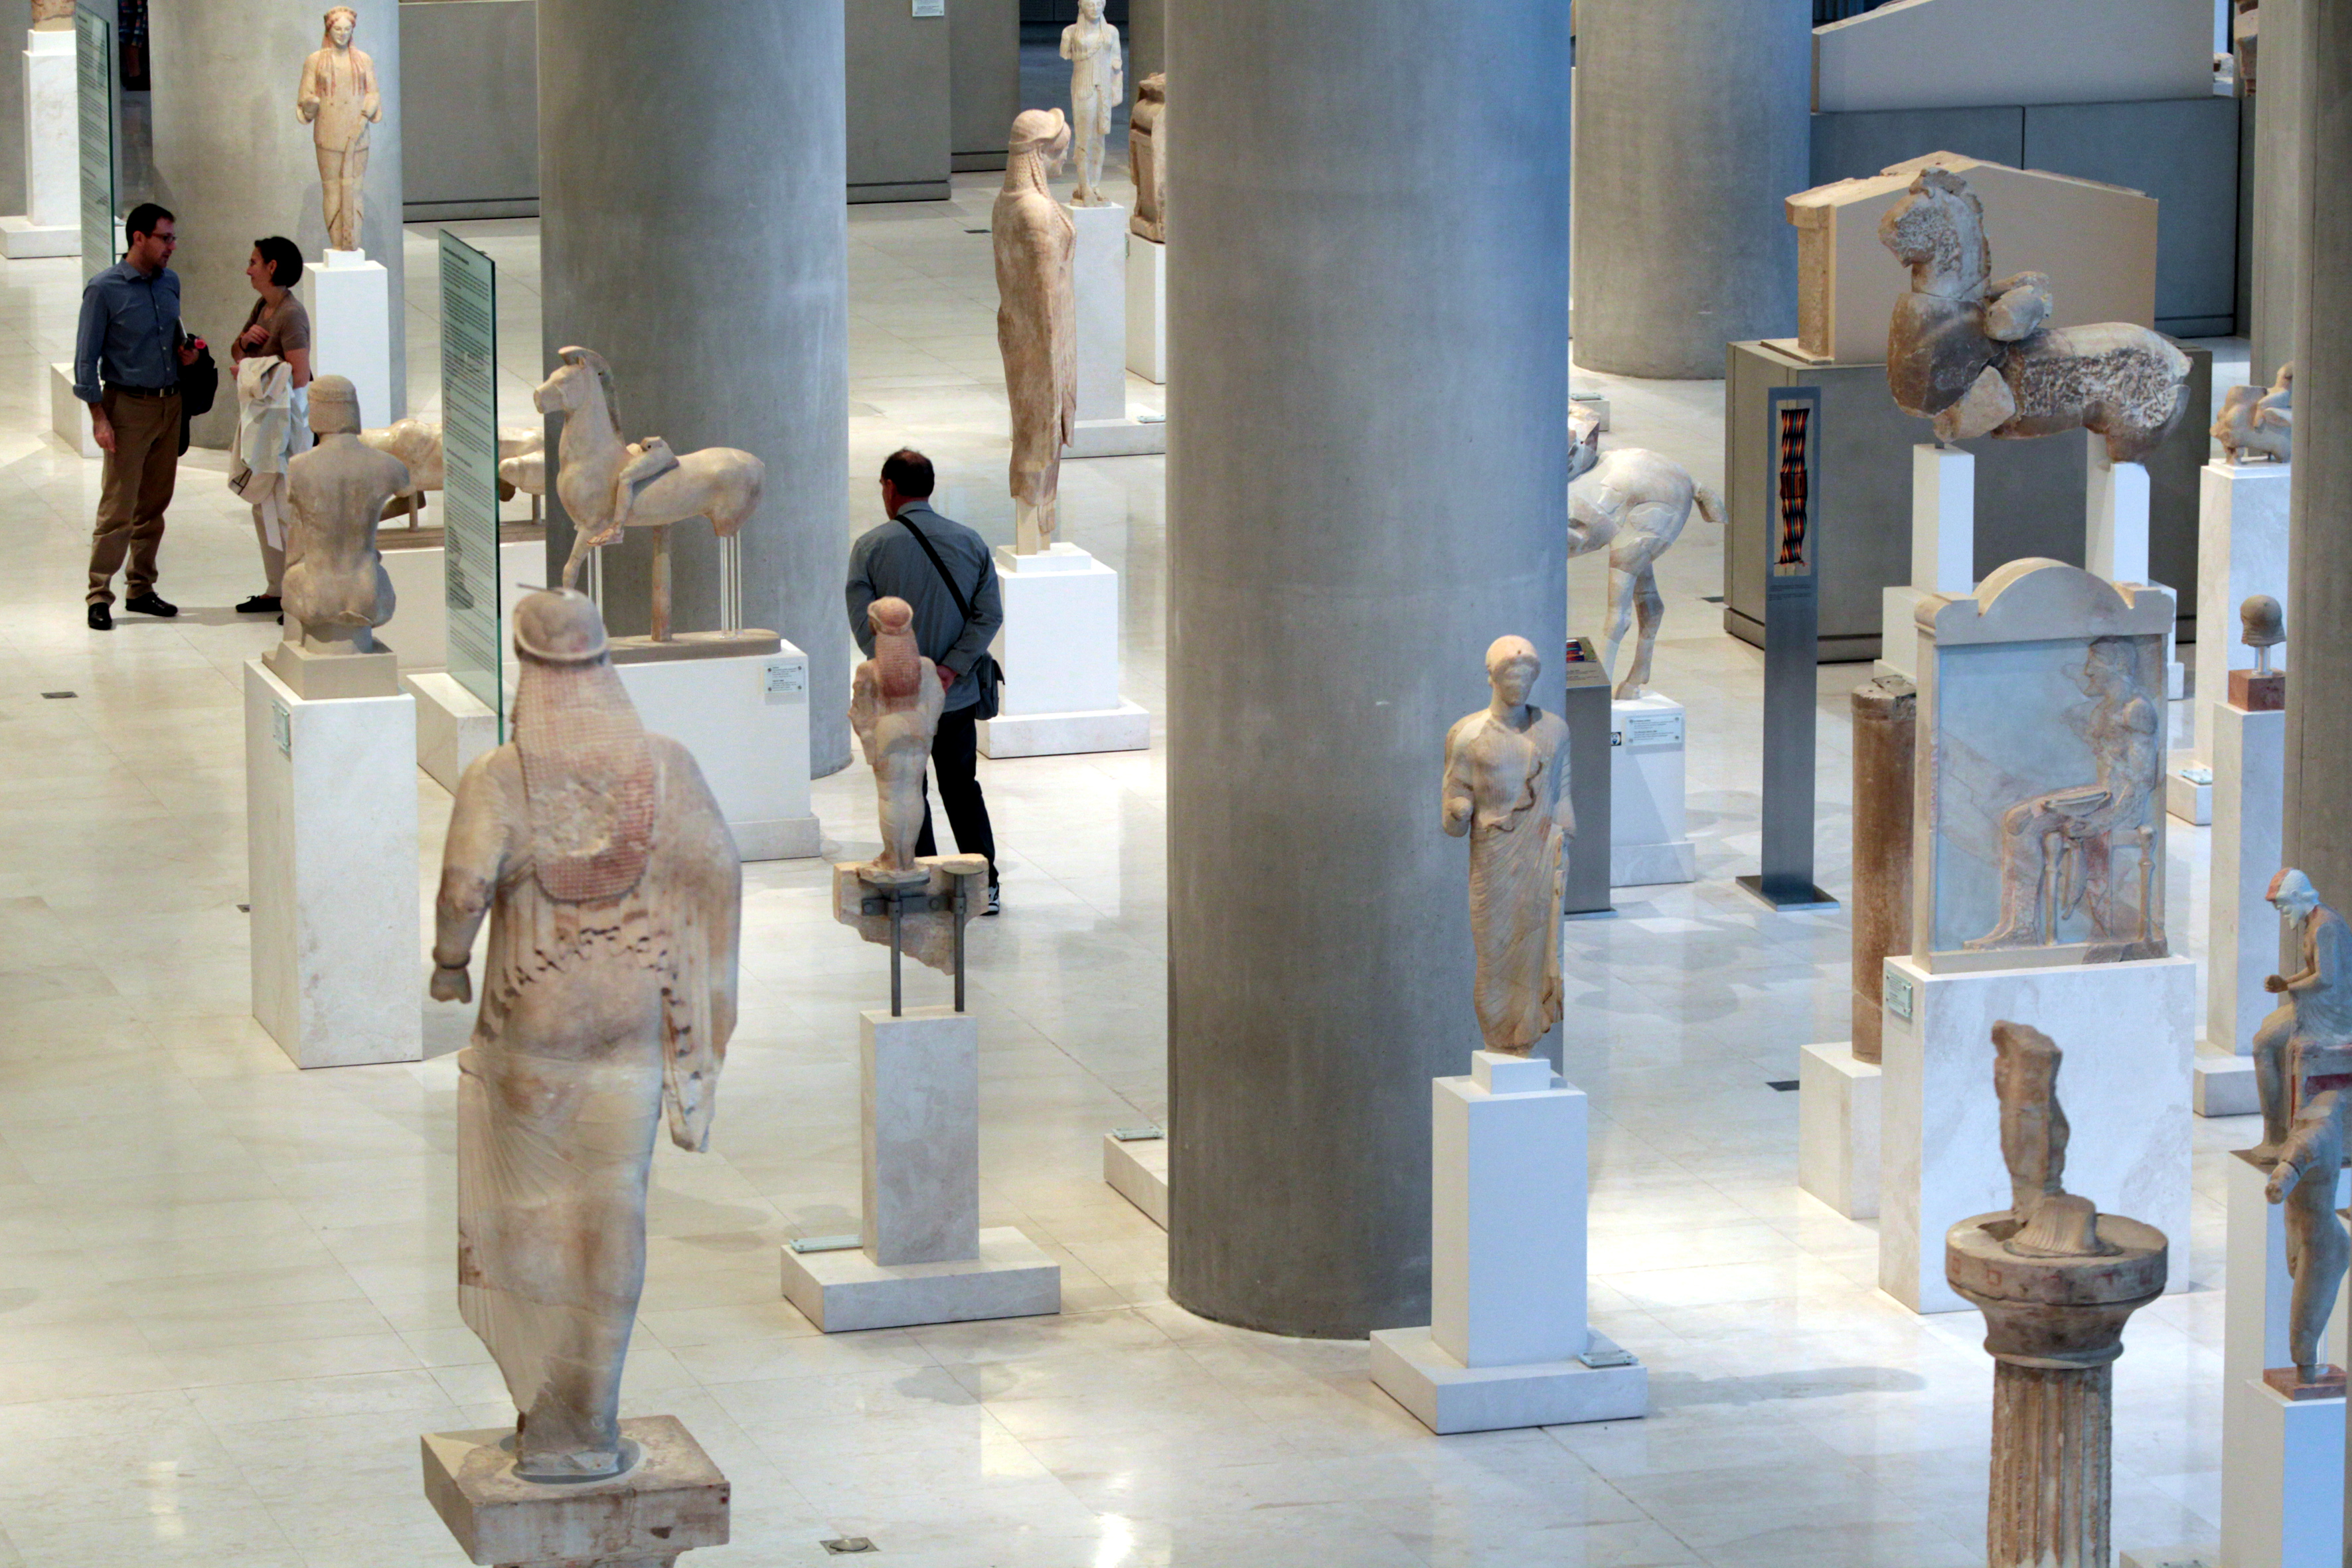 O εορτασμός της Διεθνούς Ημέρας Μουσείων στο Μουσείο της Ακρόπολης